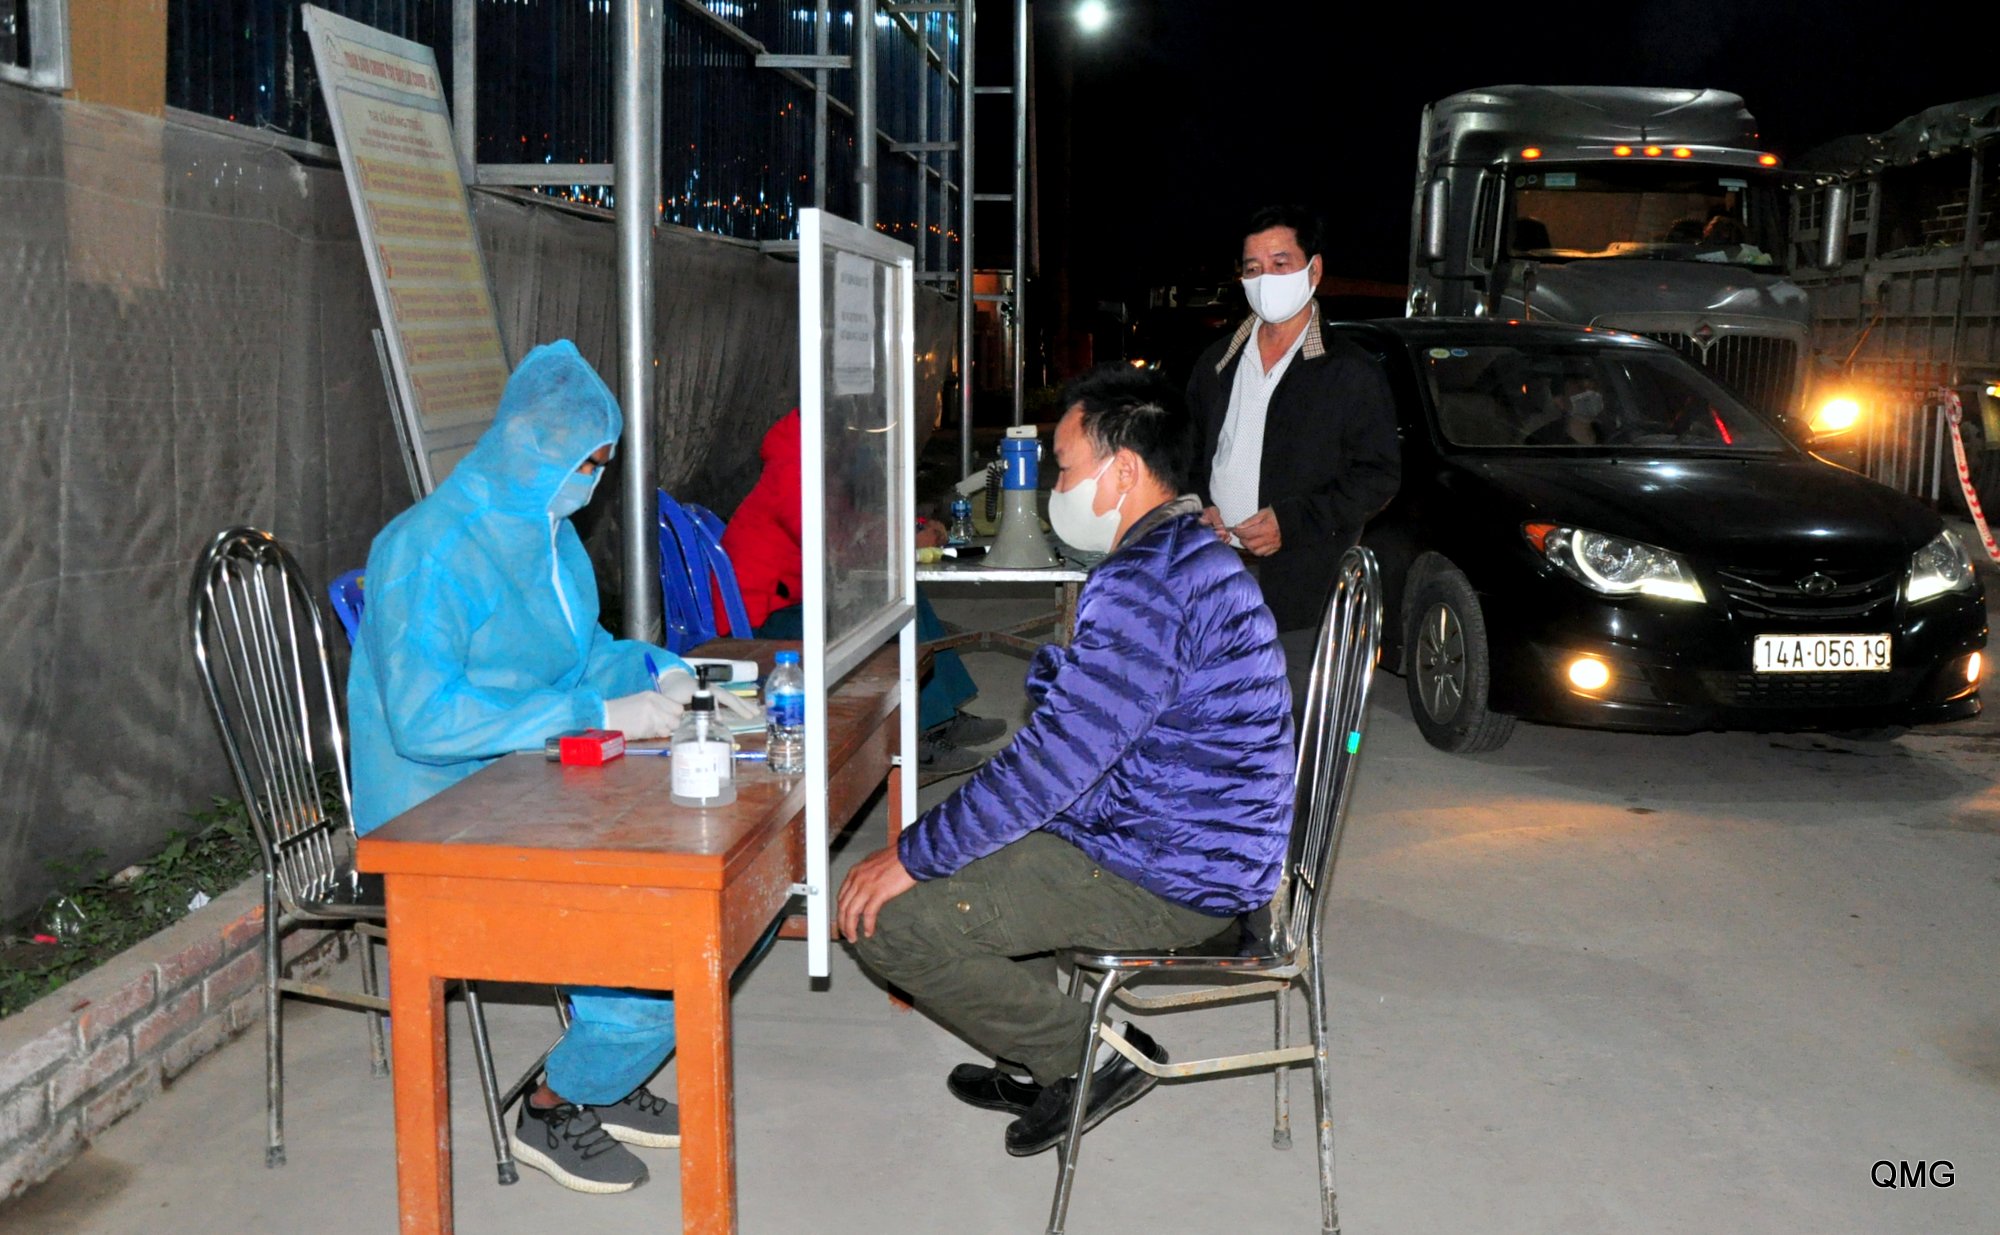 TX Đông Triều bố trí 10 bàn khai báo y tế với các lực lượng làm việc luận phiên, nõ lực hoàn thành việc khai báo trong khoảng dưới 5 phút, không để xảy ra ùn tắc giao thông.